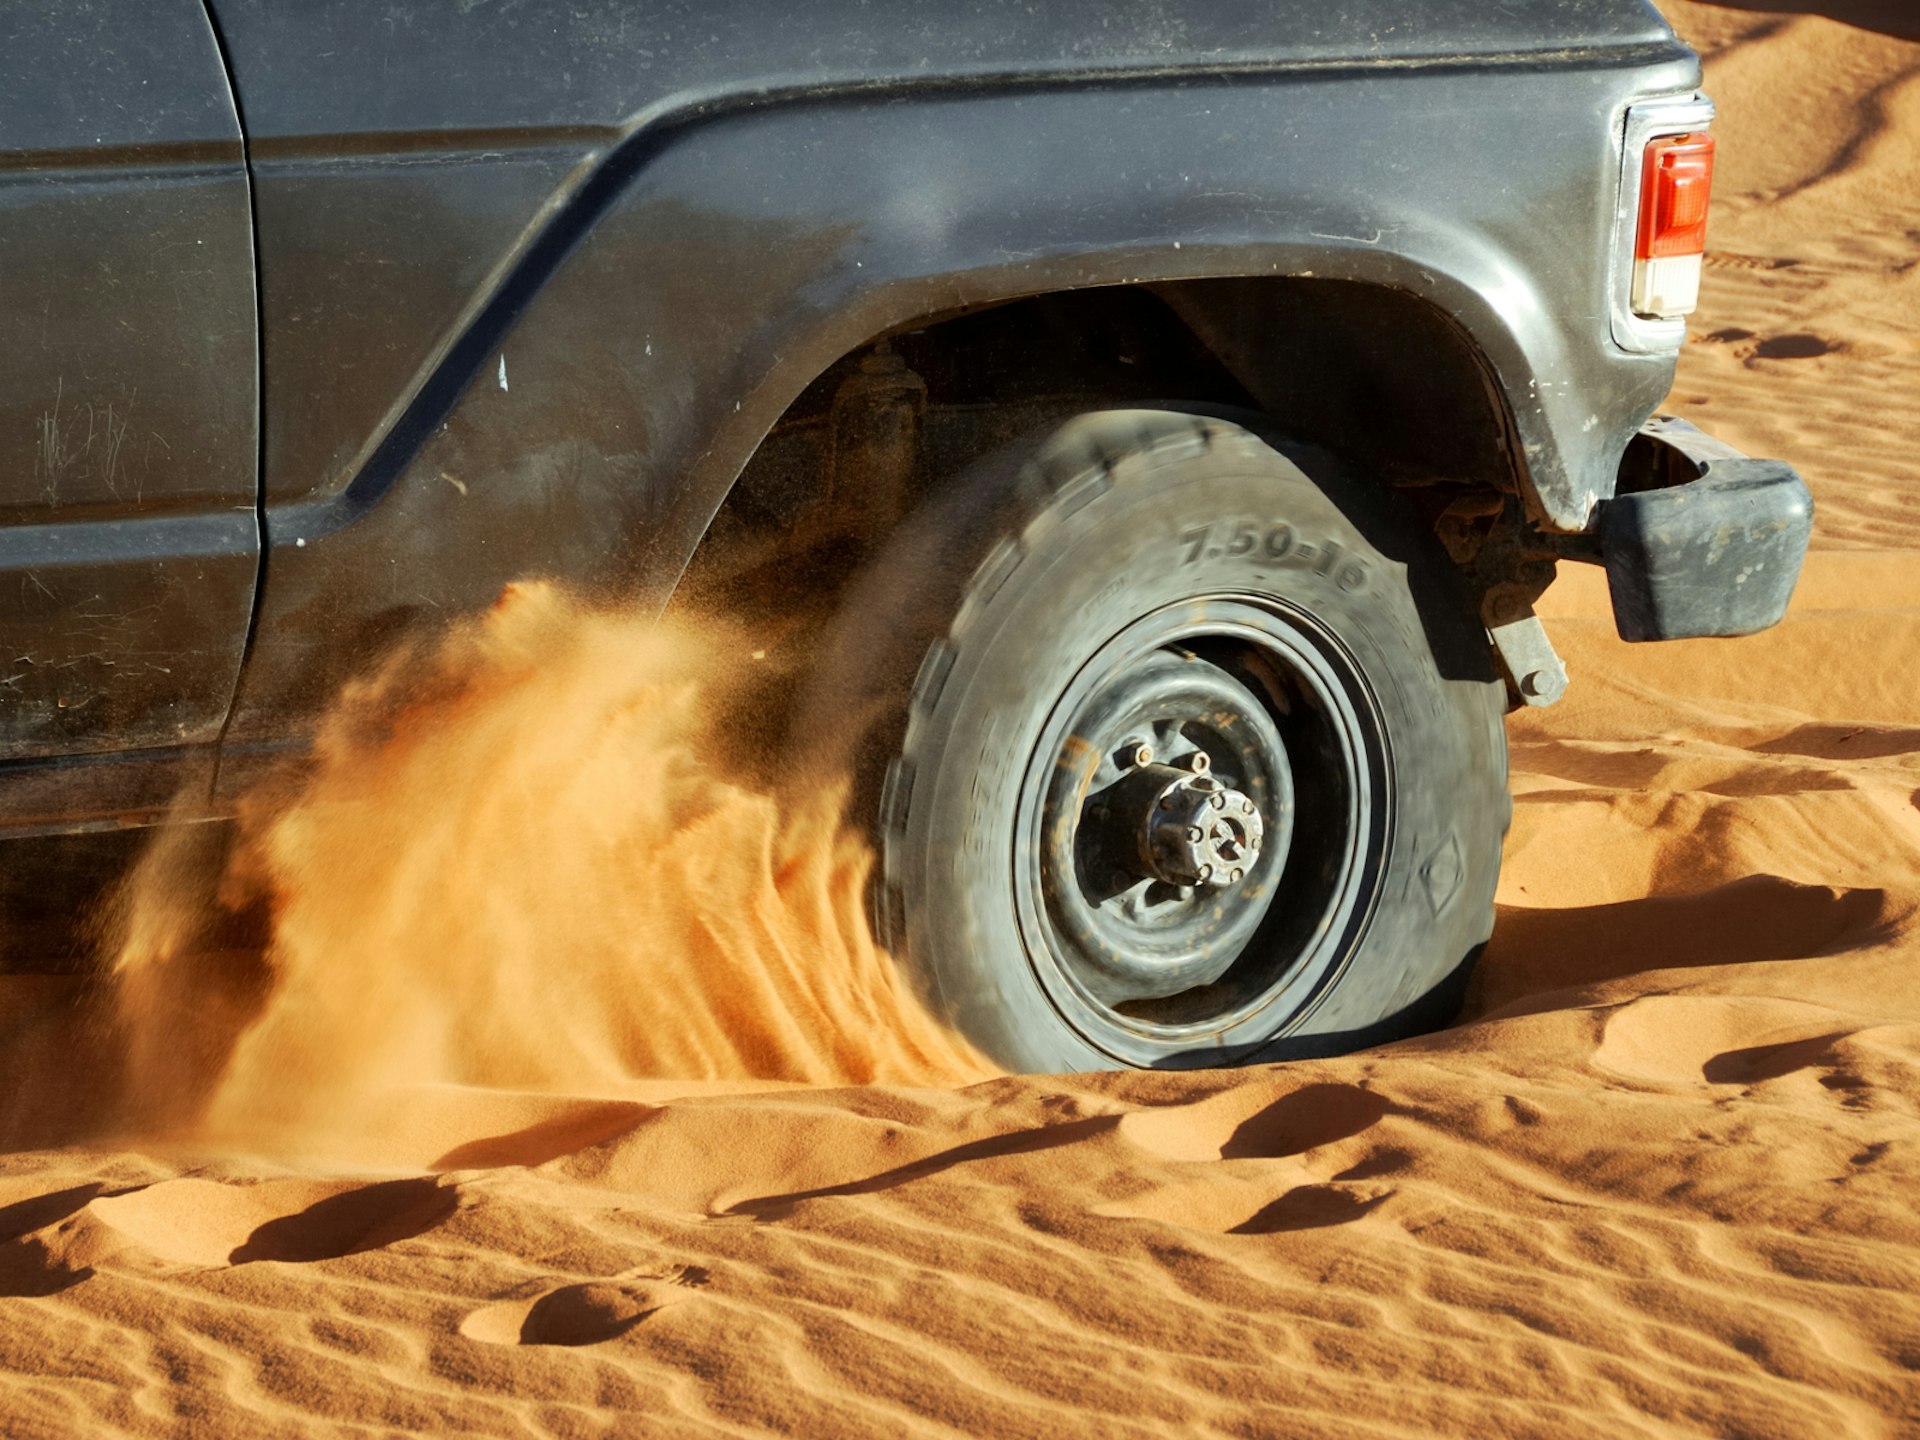 A car wheel stuck in desert sand © MrLis / Shutterstock